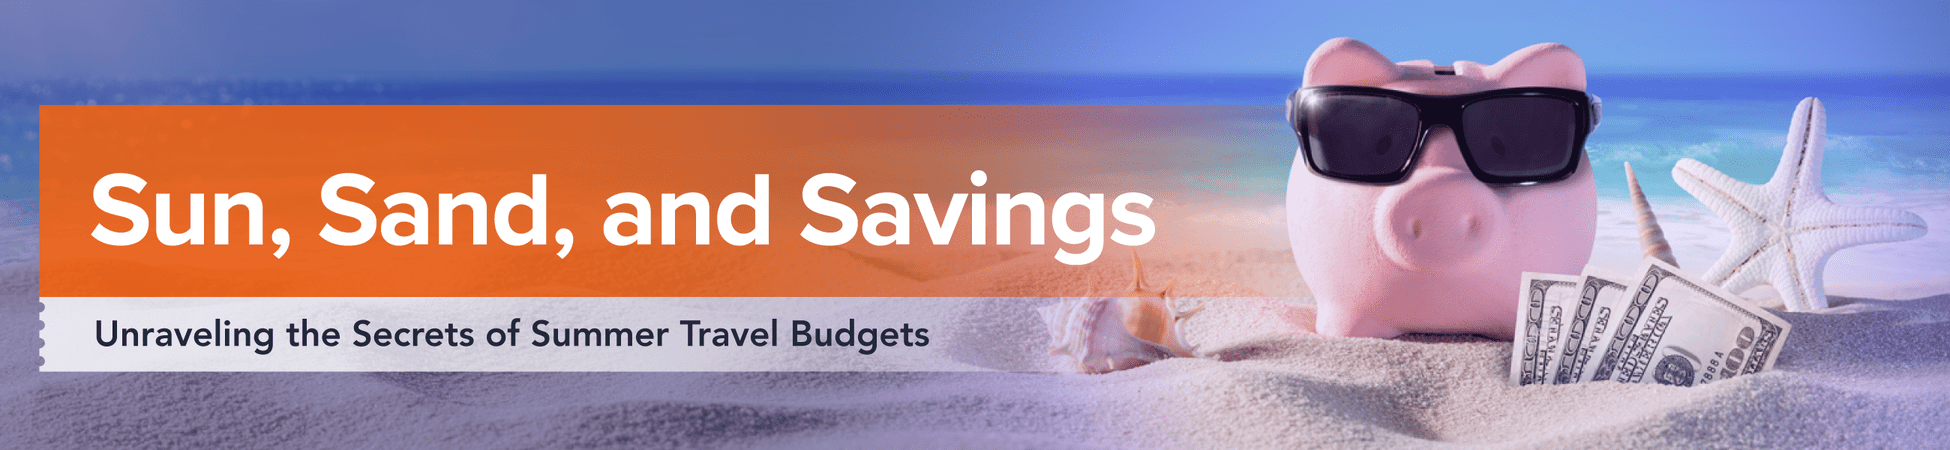 summer travel budgets header